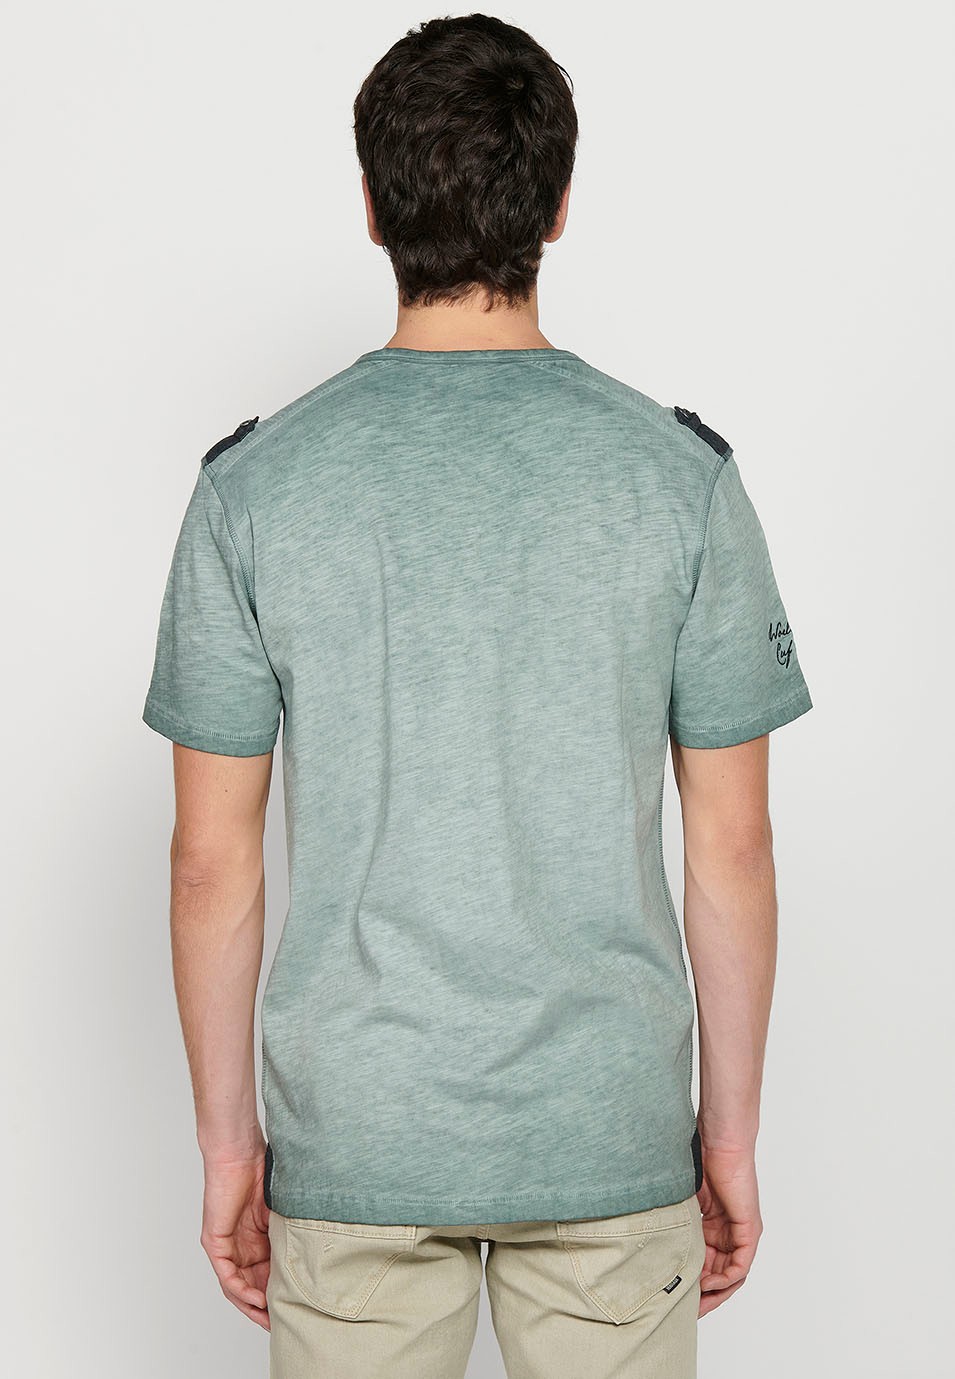 Kurzärmliges Herren-T-Shirt aus Baumwolle mit Rundhalsausschnitt, geknöpfter Öffnung und khakifarbenem Detail vorne 4